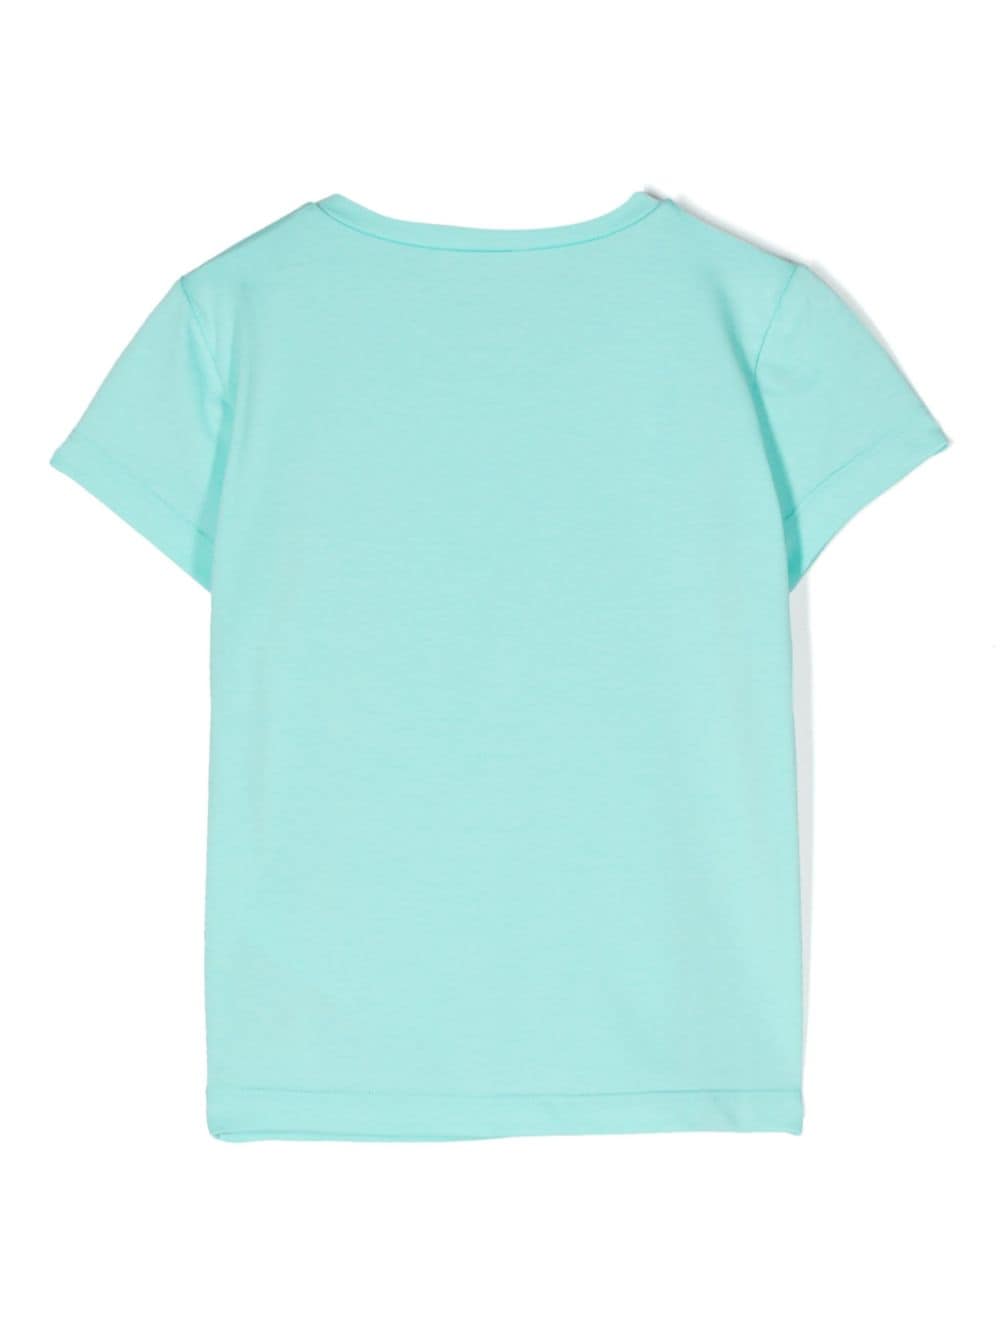 Aqua blue t-shirt for girls with logo